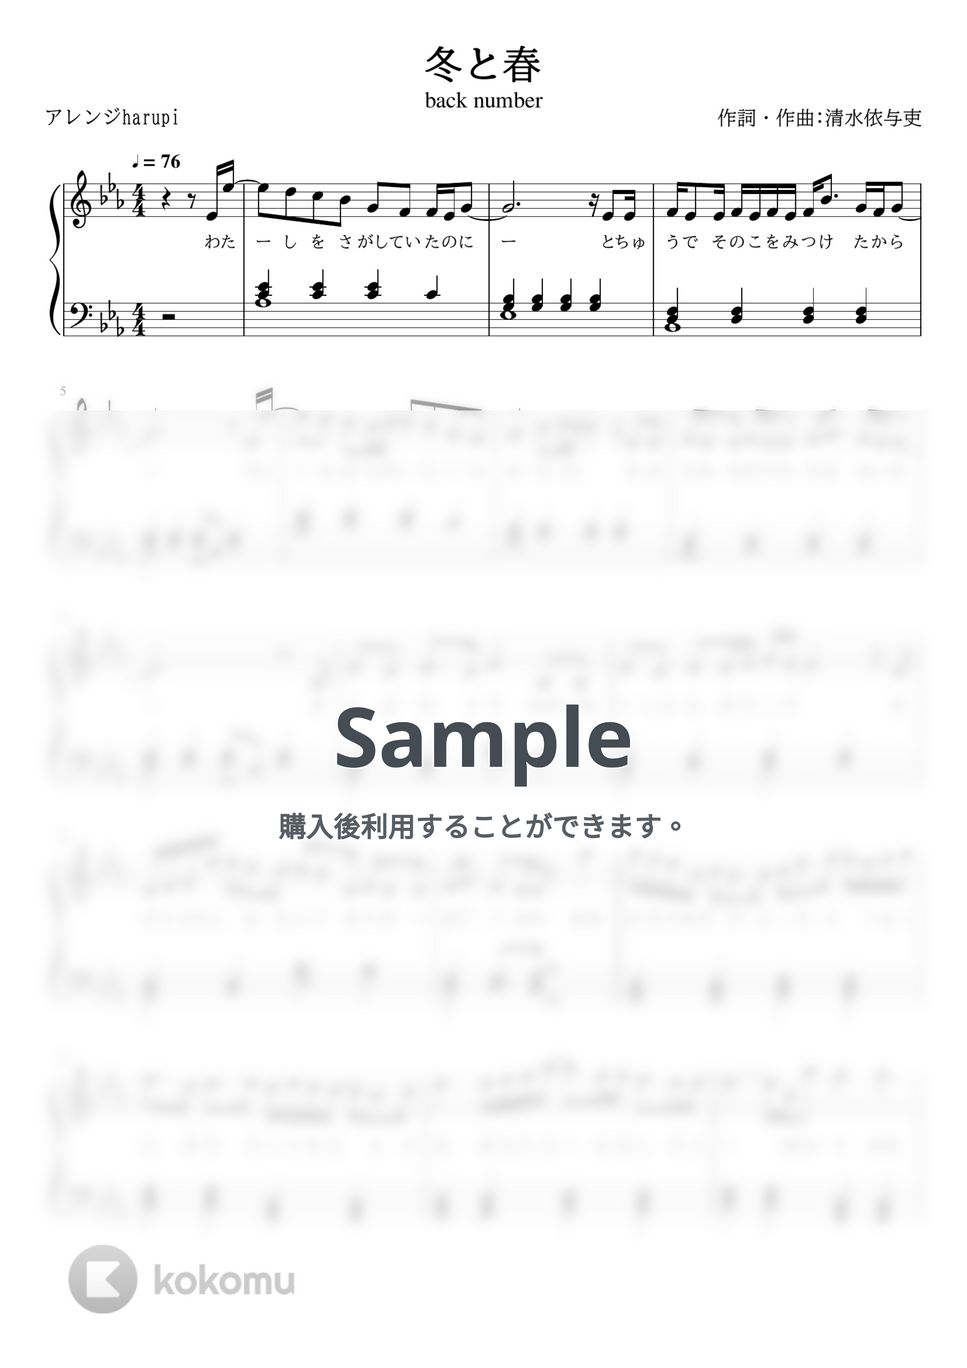 back number - 冬と春 (ピアノソロ,冬と春,back number) by harupi